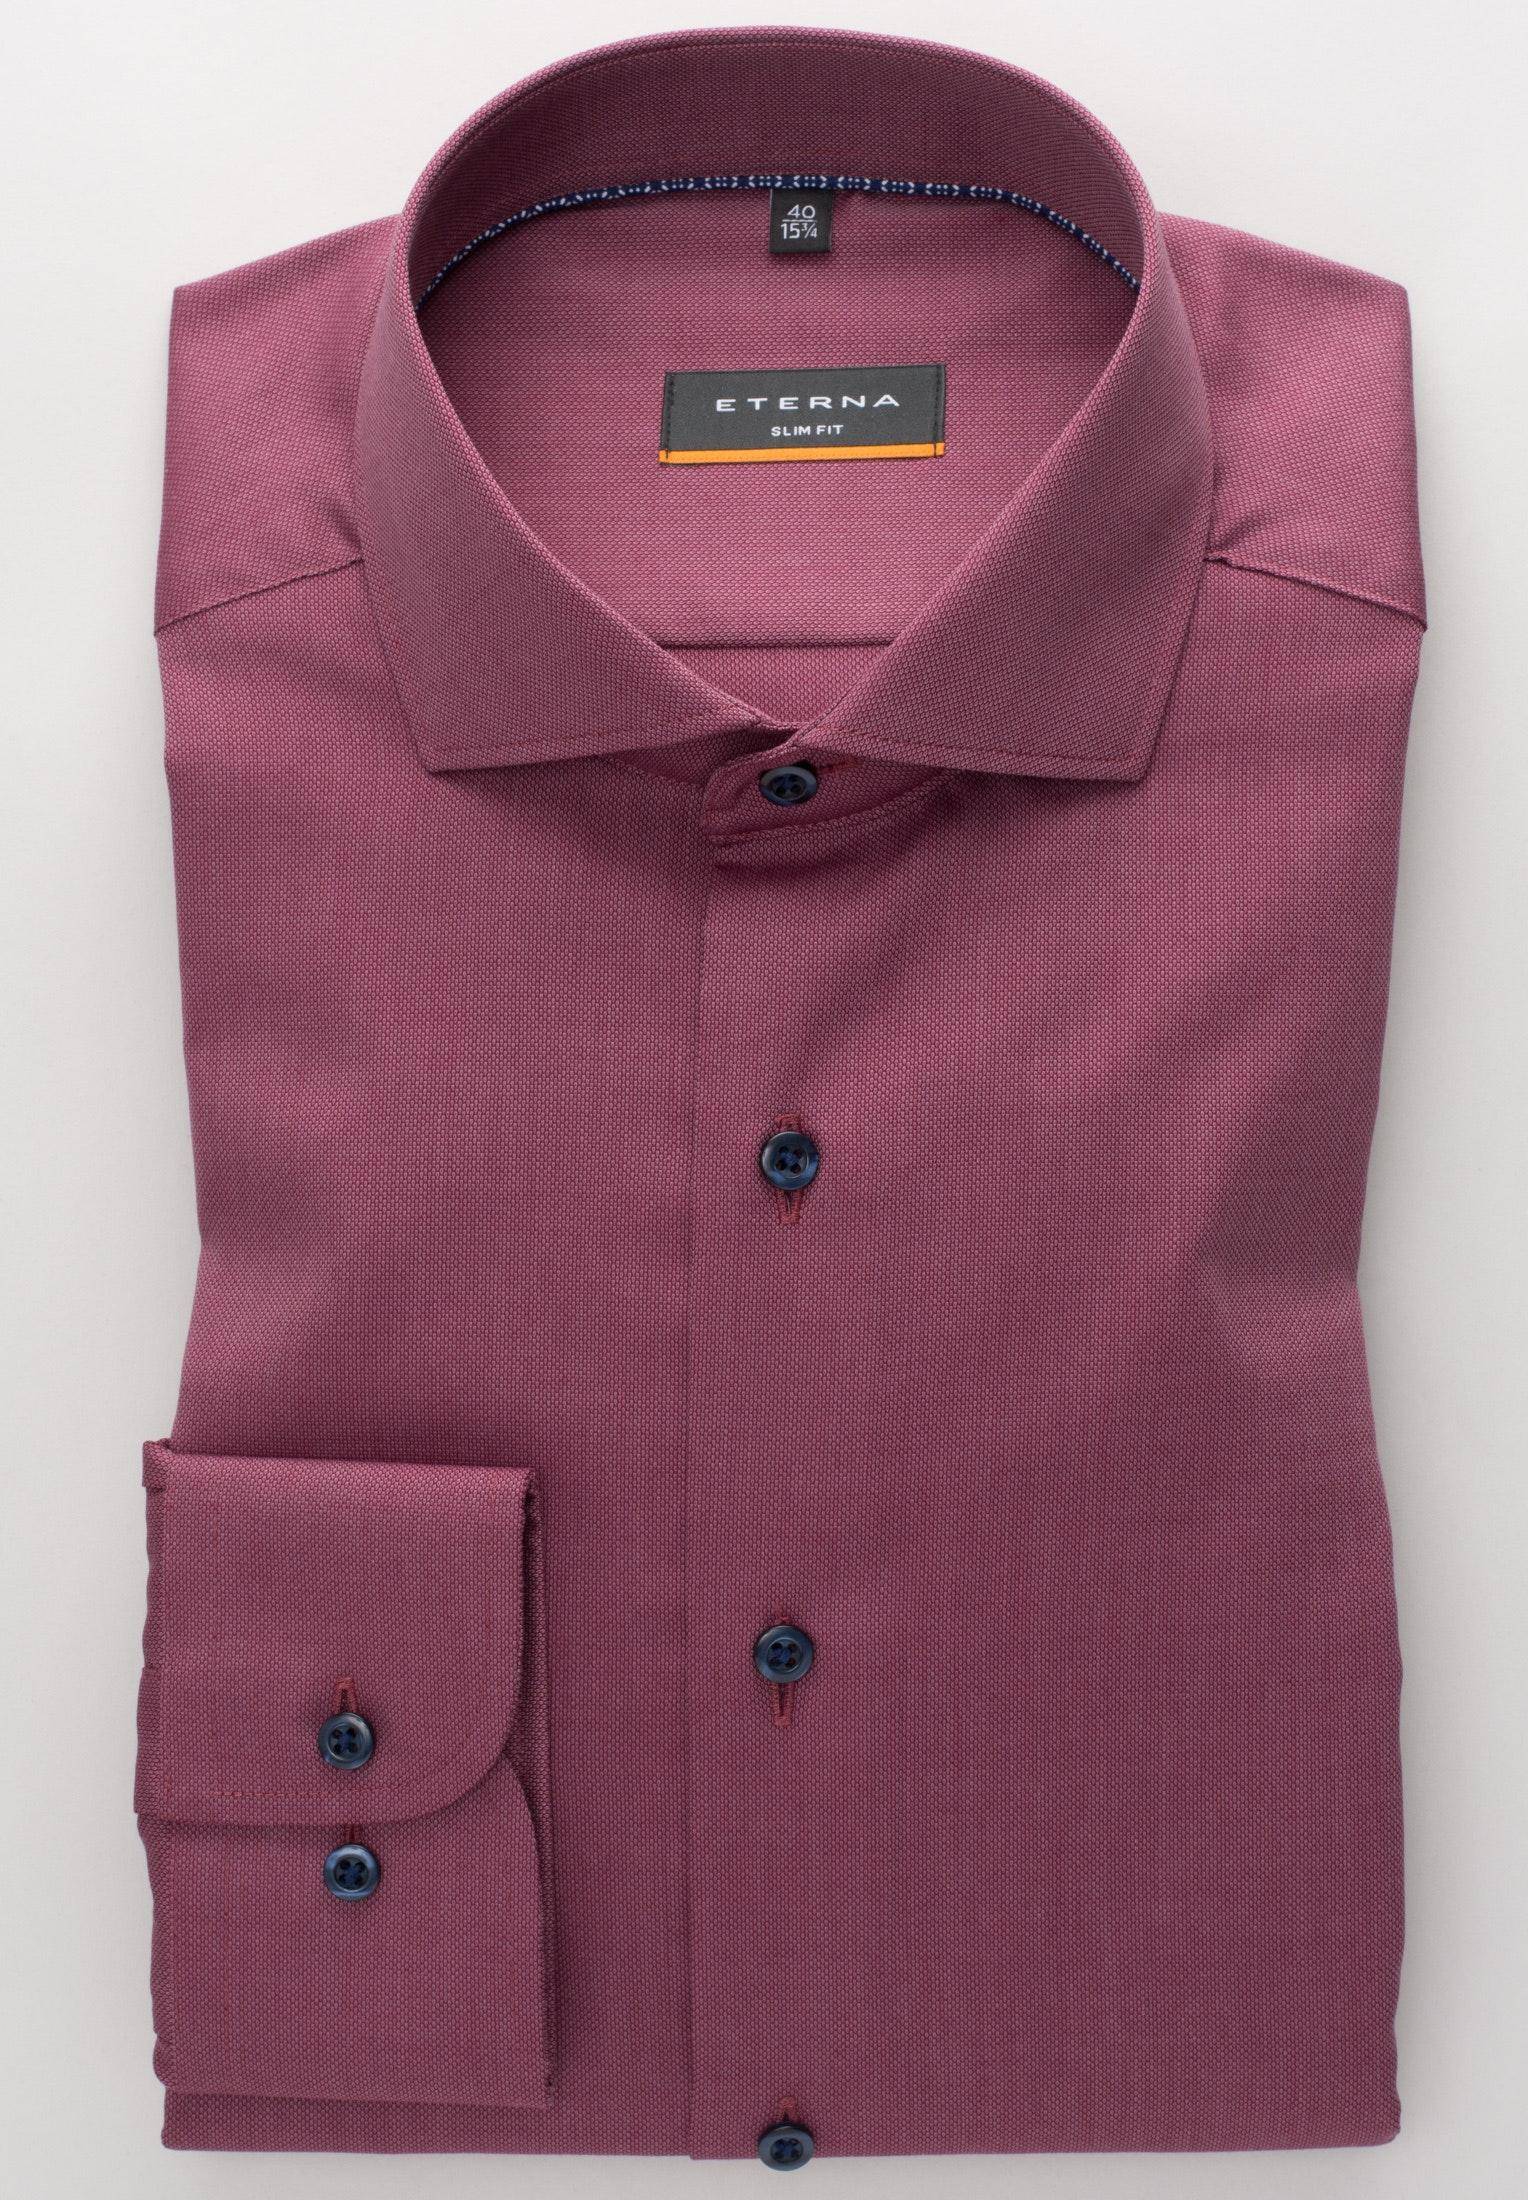 Мужская рубашка ETERNA, бордовая, цвет бордовый, размер 44 - фото 2